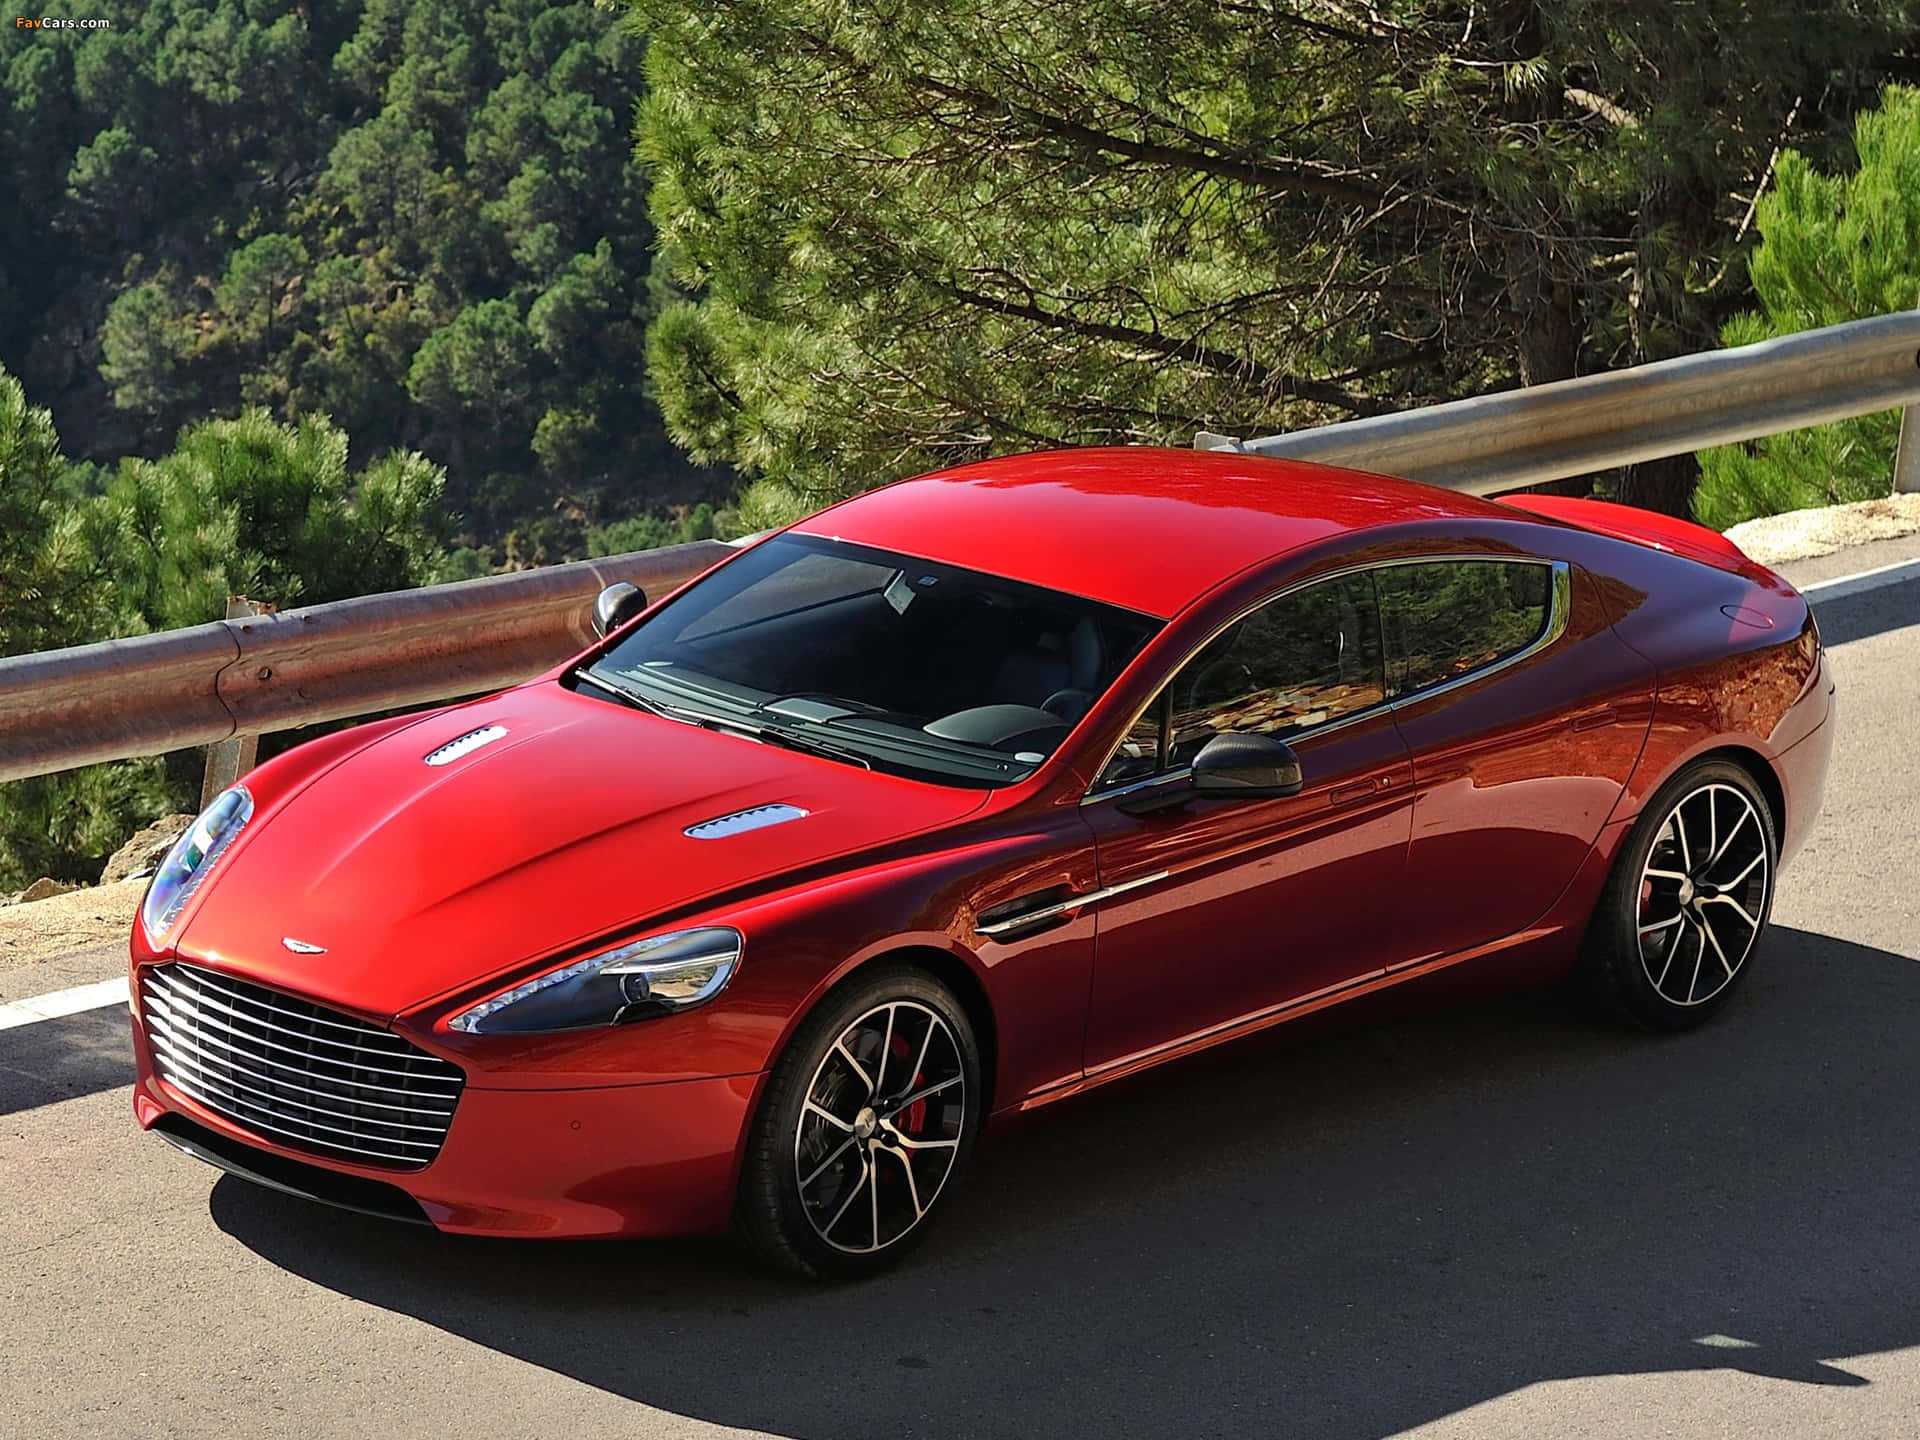 Fondode Pantalla De Aston Martin Rapide S: Una Fusión Perfecta De Potencia Y Elegancia. Fondo de pantalla